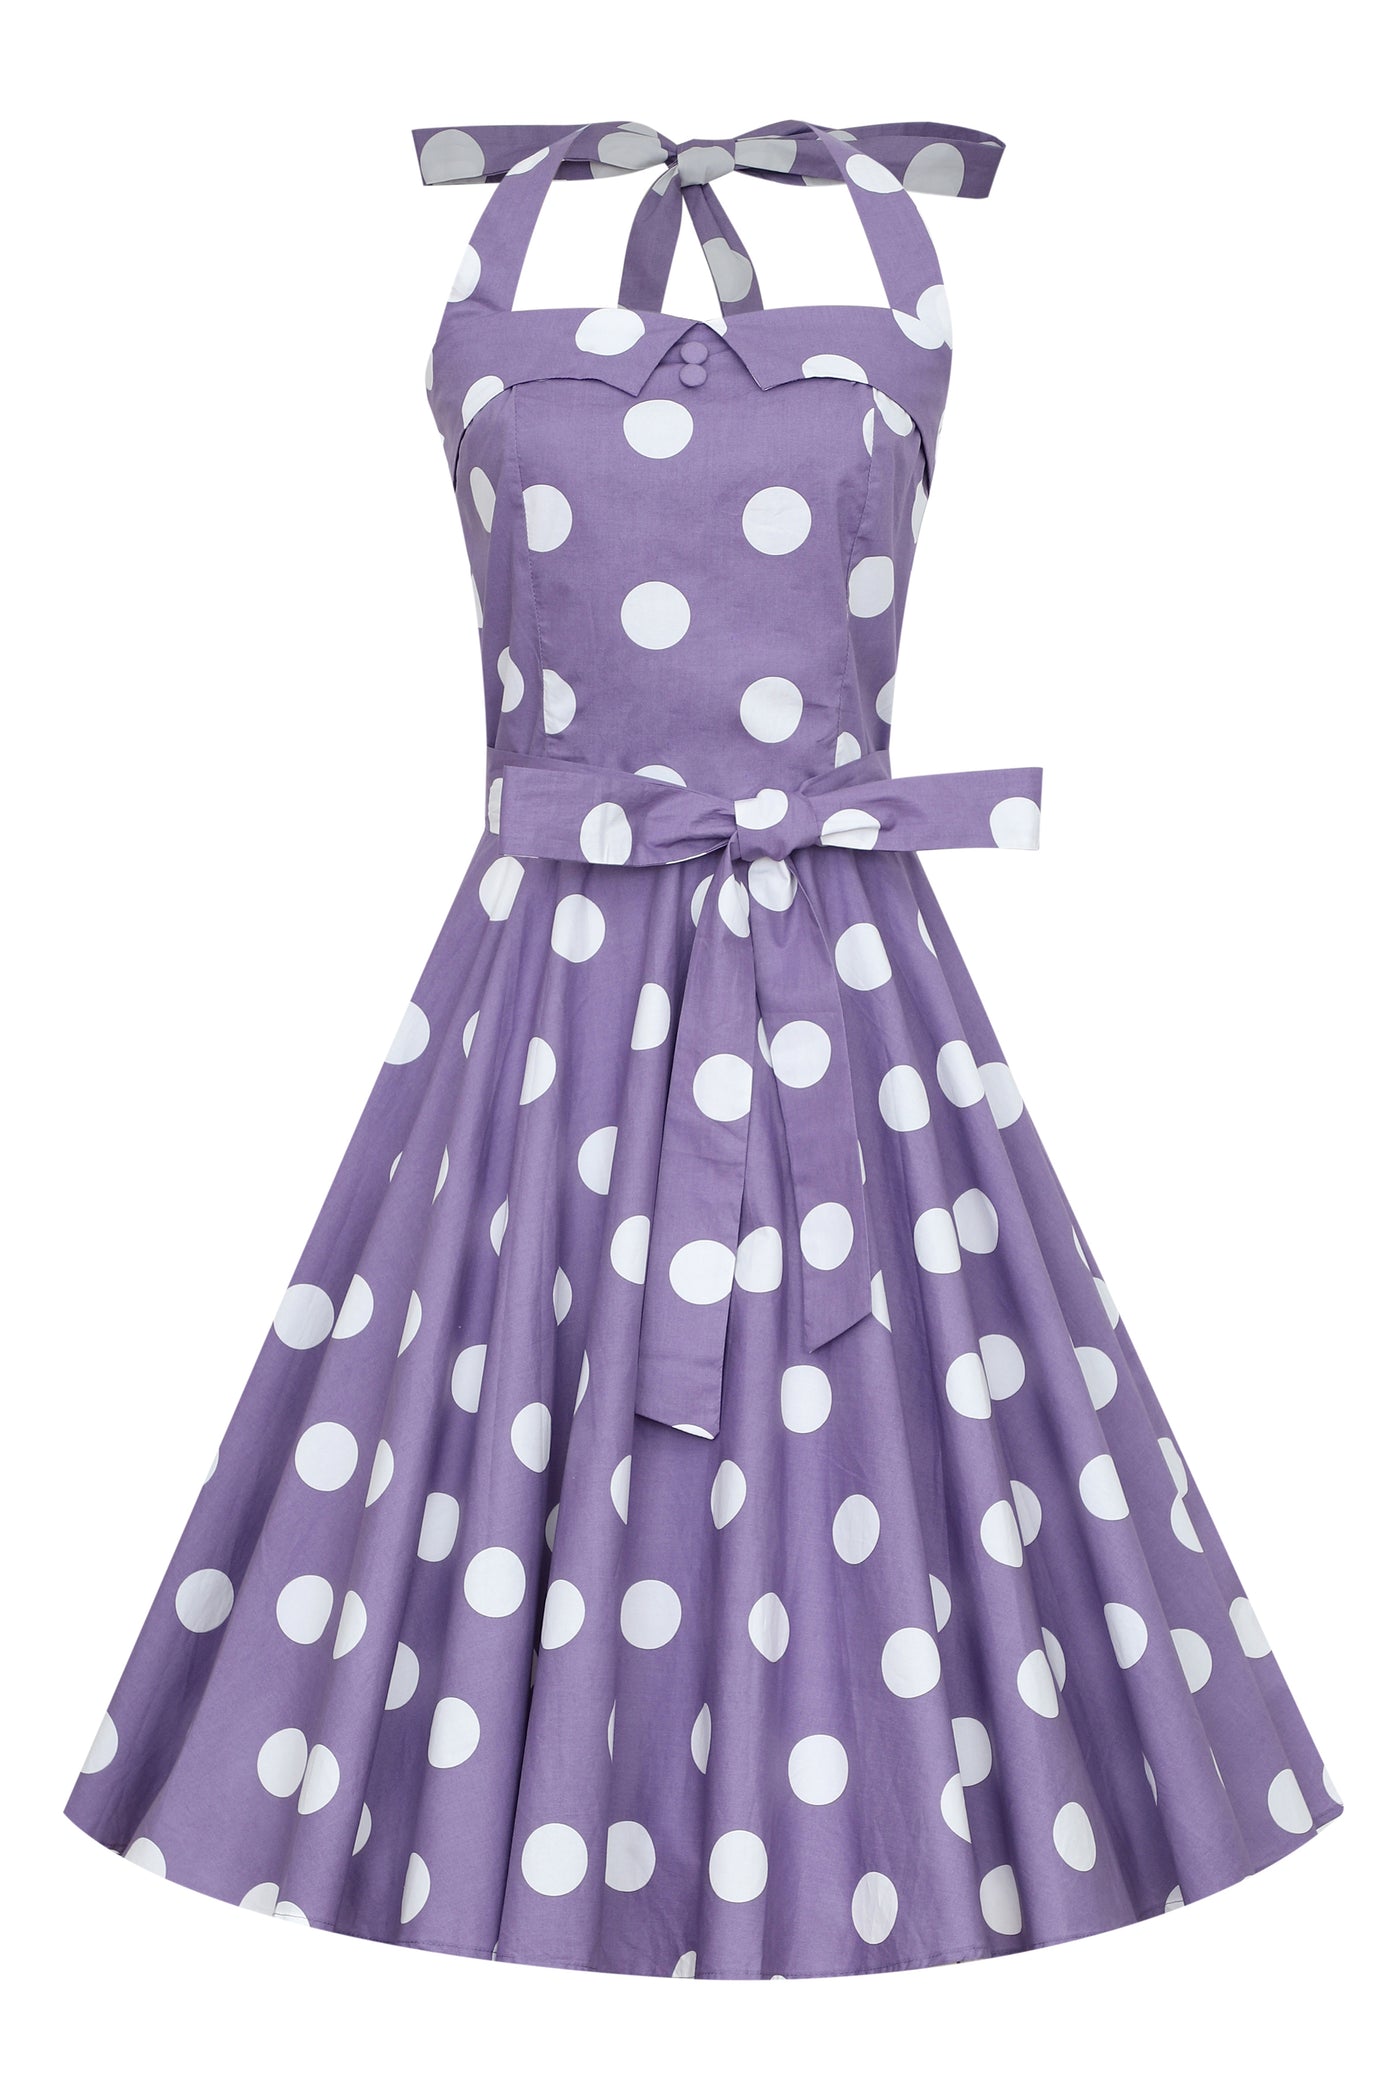 Woman's Rockabilly 1950's Halterneck Dress in Purple Polka Dots